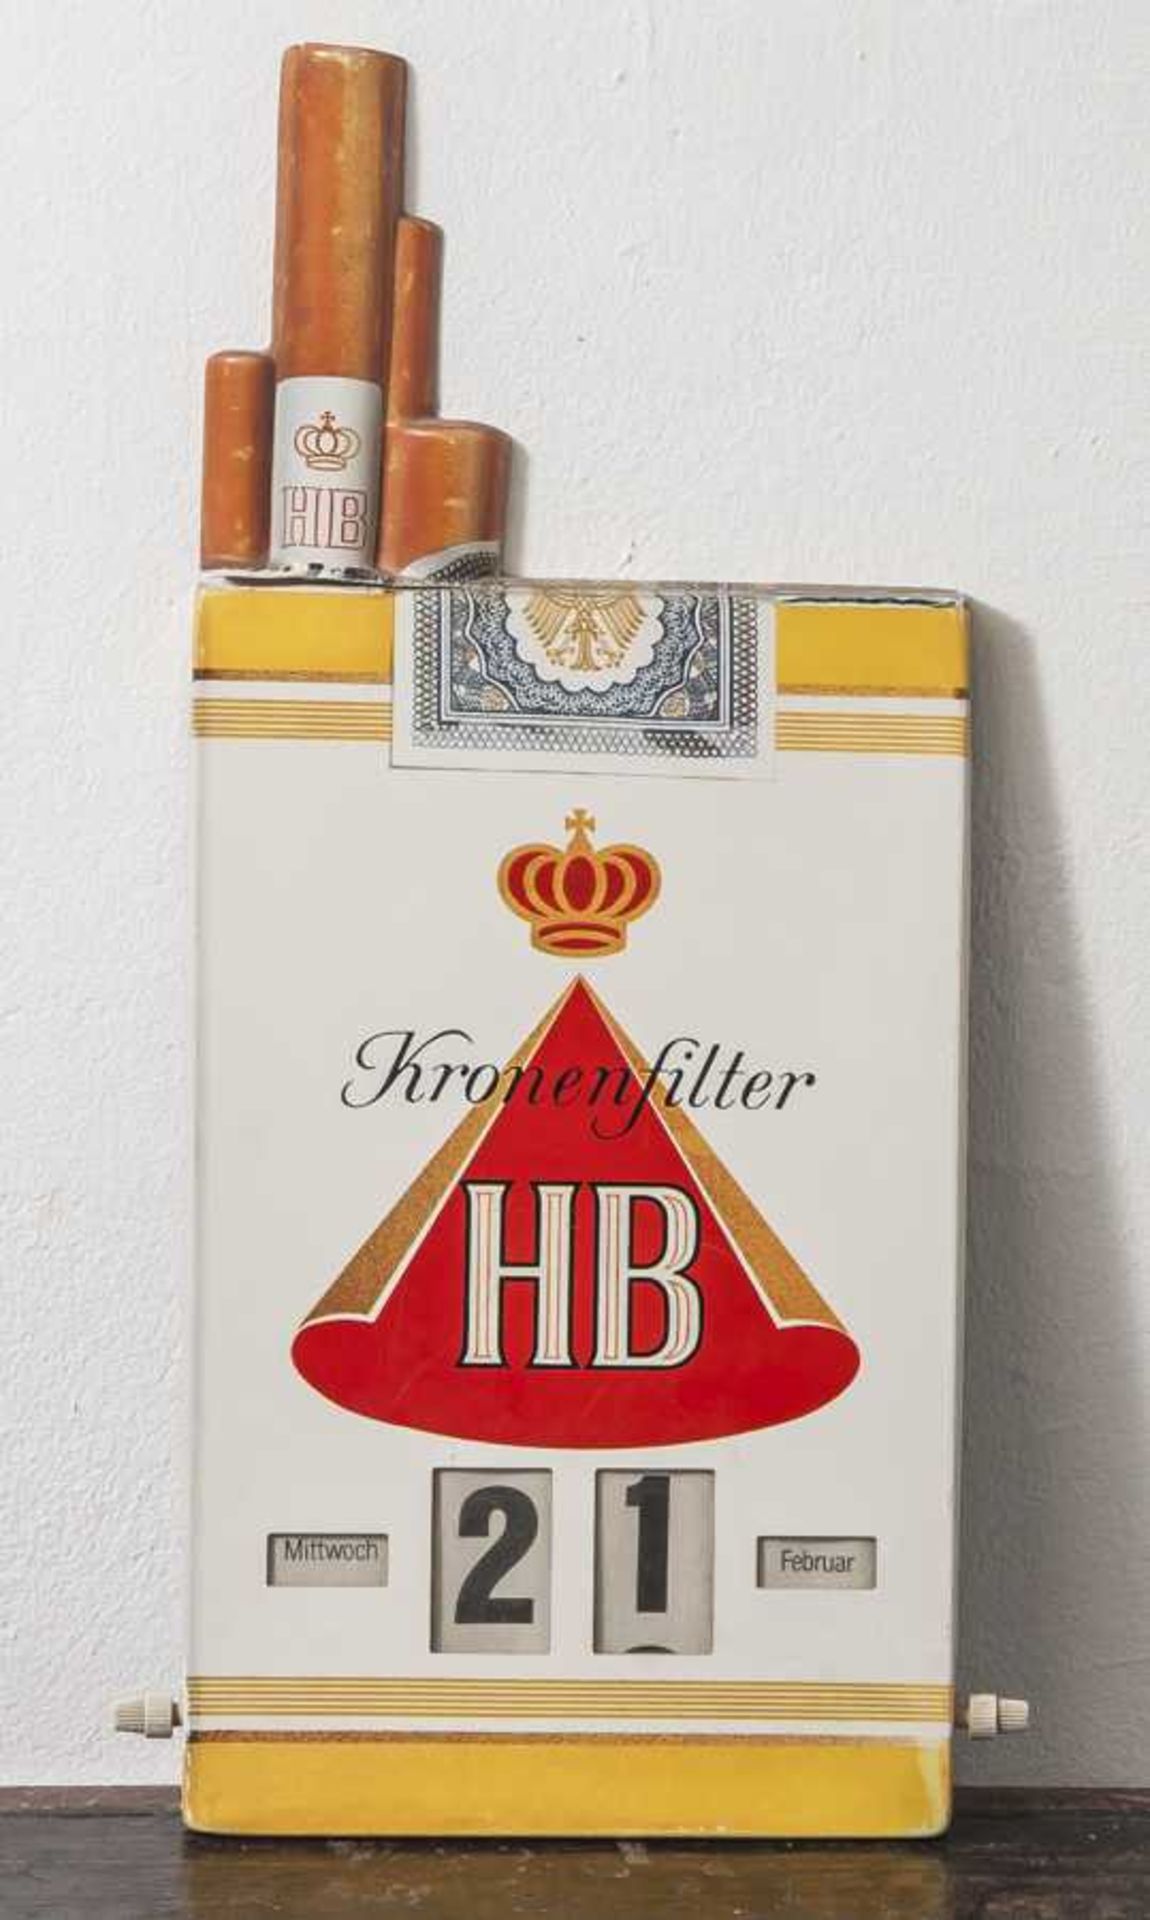 Drehkalender "Kronenfilter HB", hochrechteckiges Werbeschild aus Kunststoff, mitWochentag- und